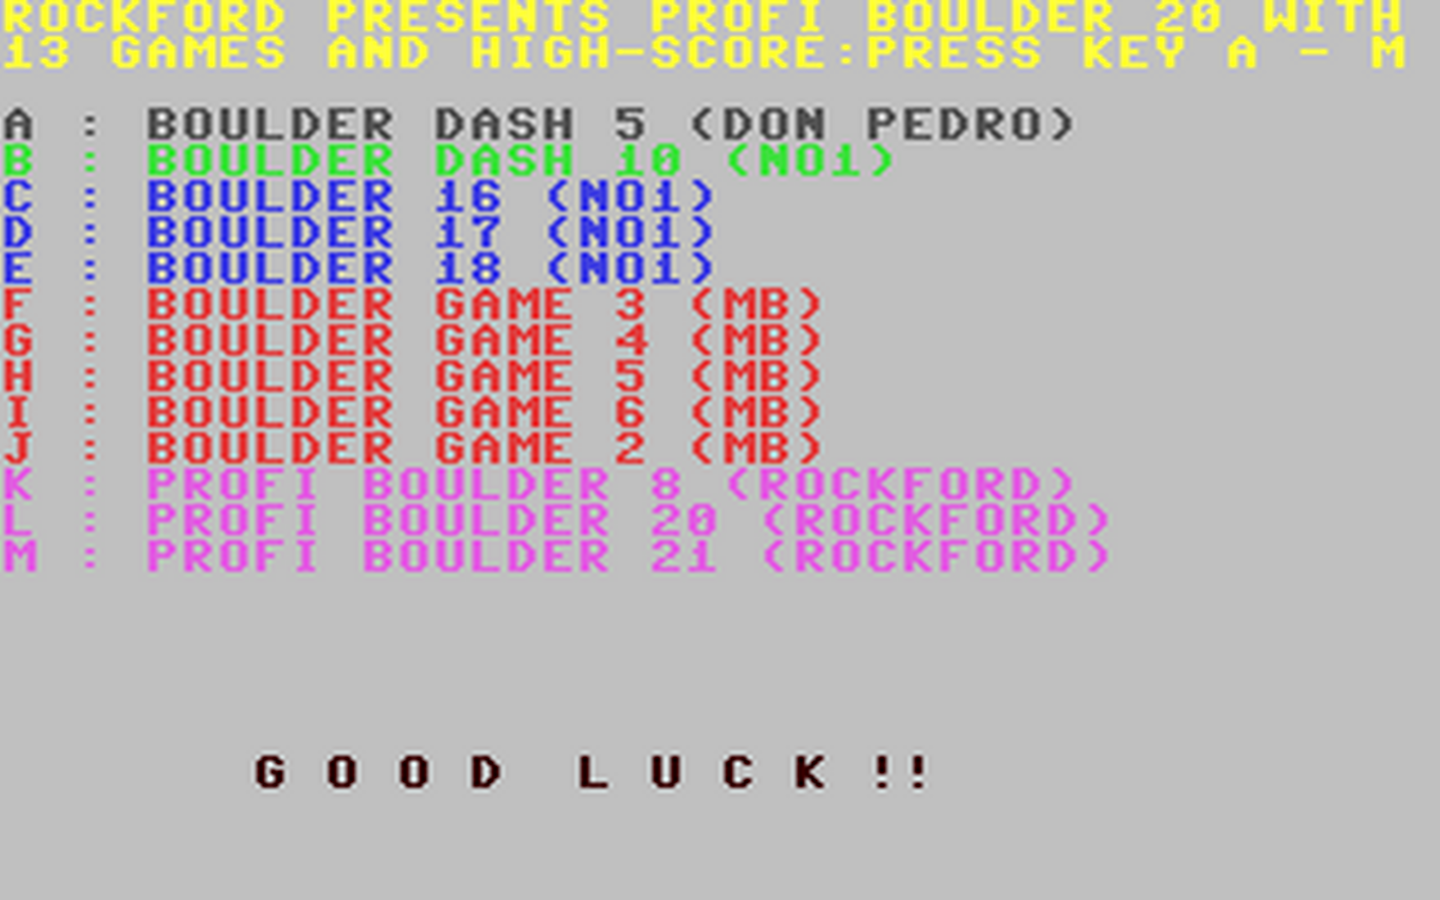 C64 GameBase Profi_Boulder_020-021 (Not_Published) 1991